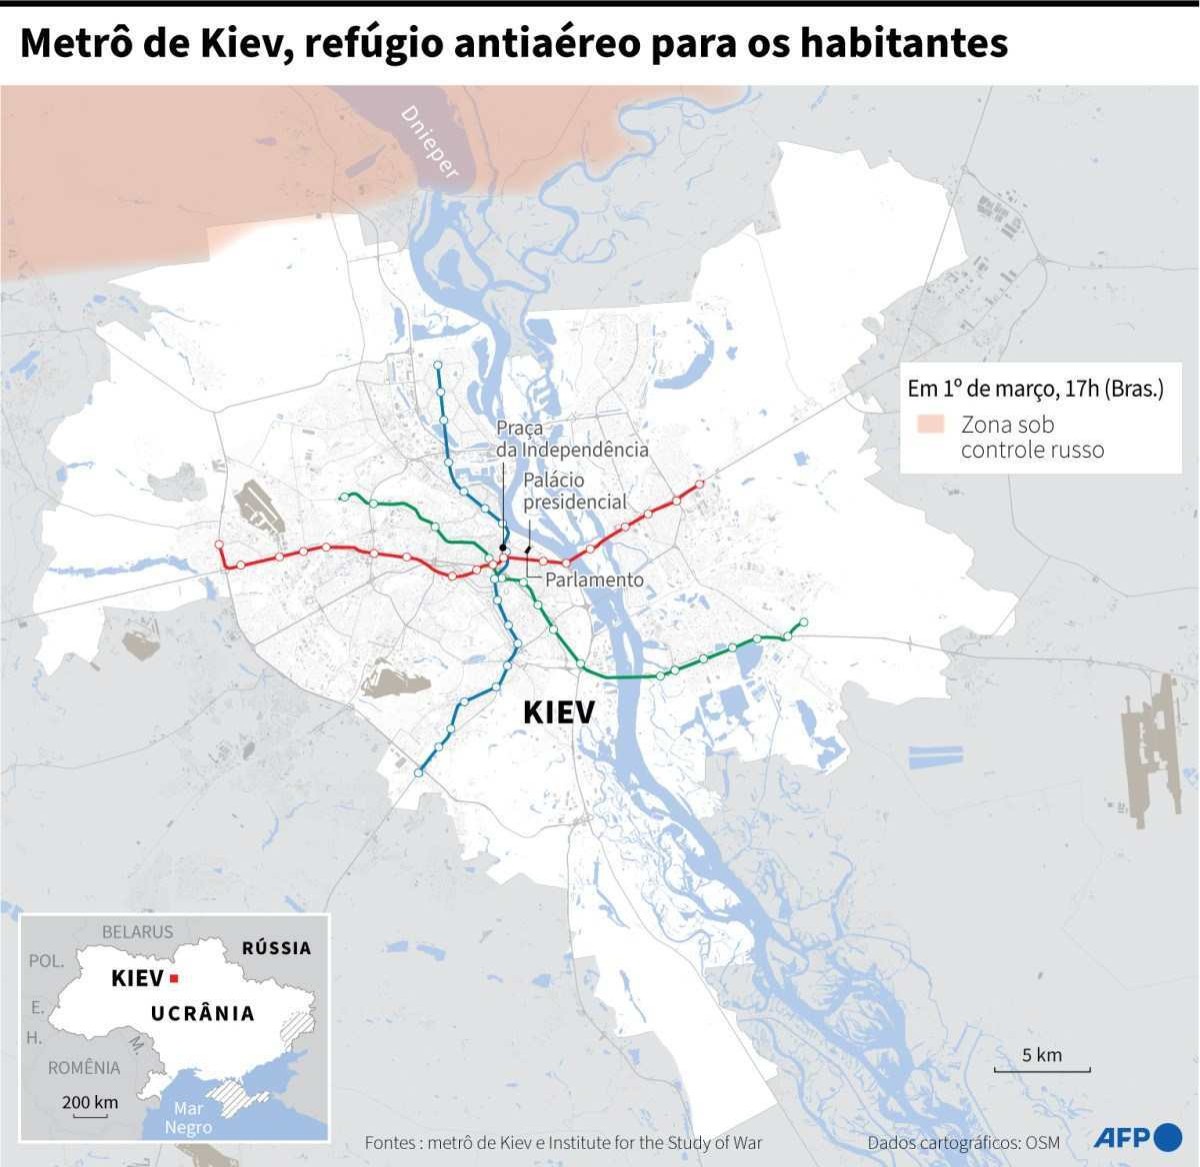 Infografía Miércoles 2/3 - Mapa de Kiev con la ubicación de las tres líneas de metro de la capital ucraniana, y la zona de la ciudad controlada por Rusia, el 1 de marzo a las 17 h (Brass).